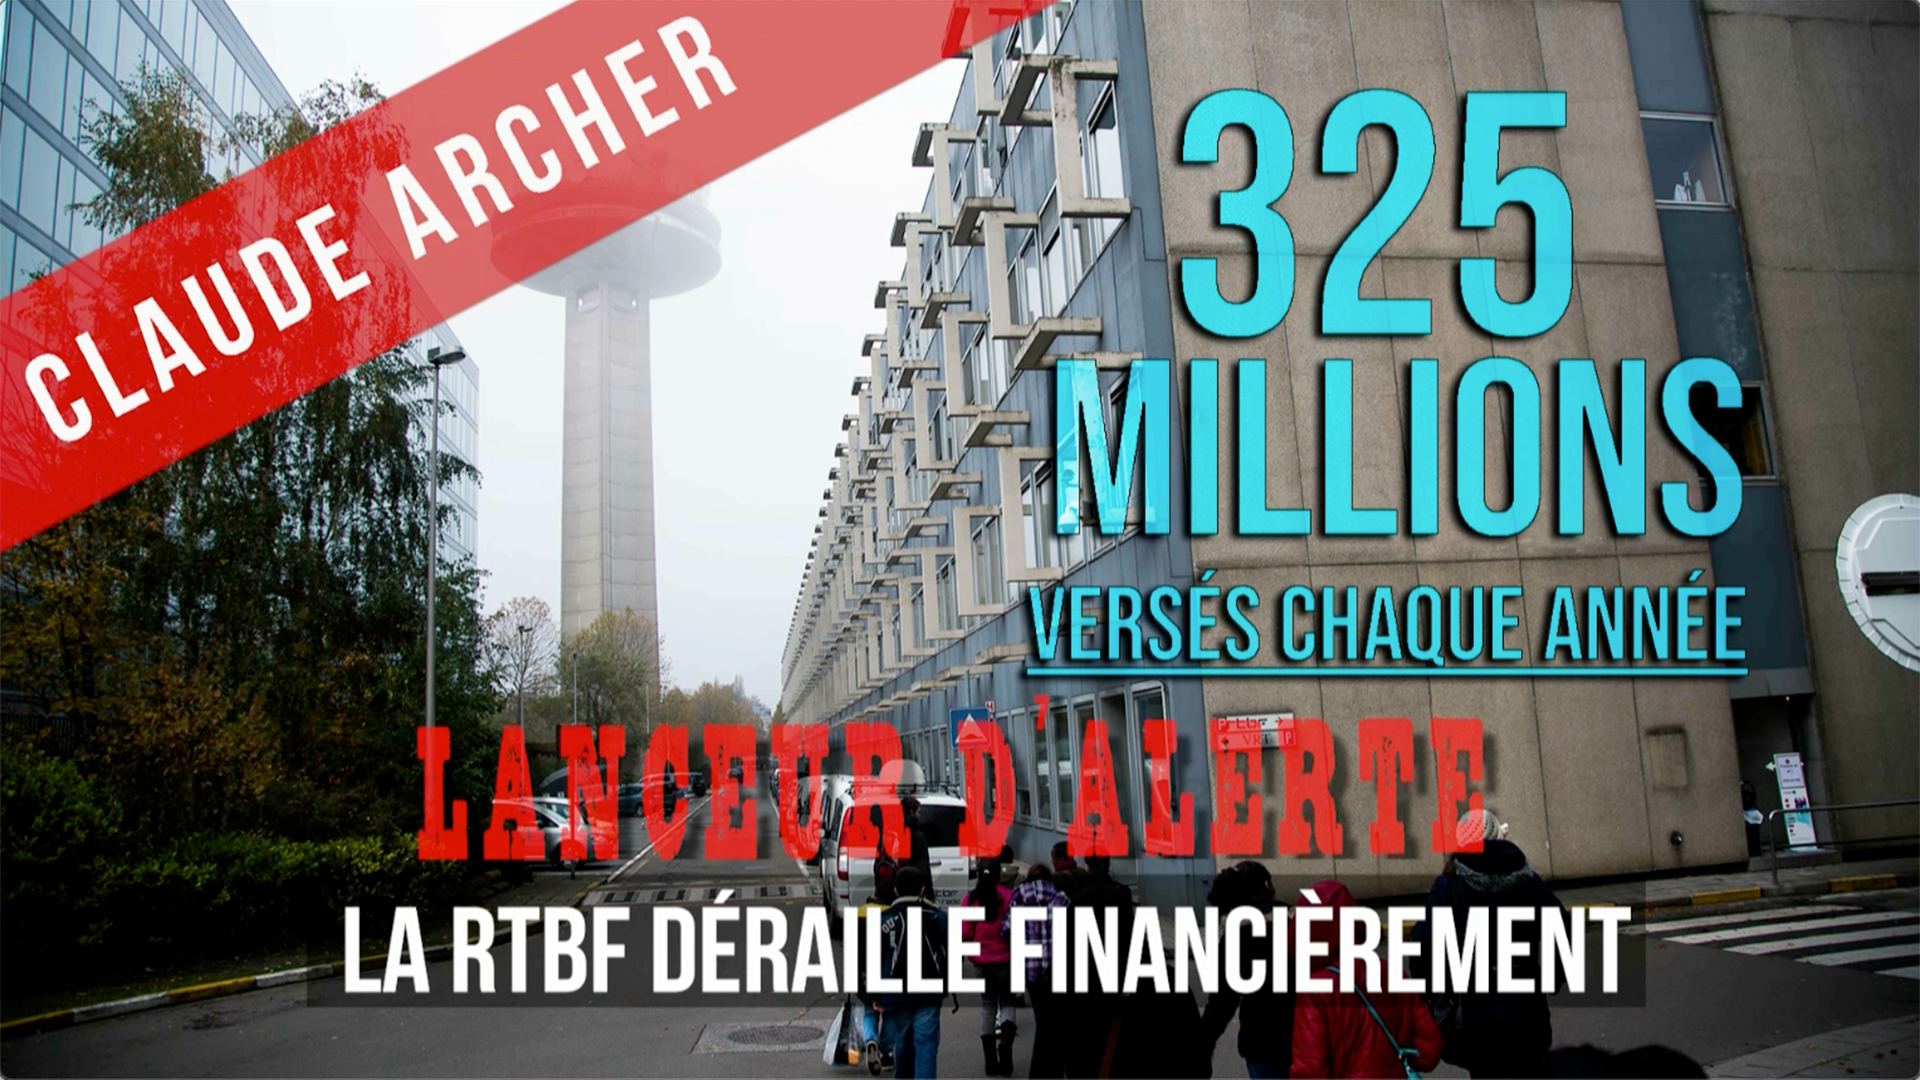 Lanceur alerte #9 - La RTBF déraille financièrement